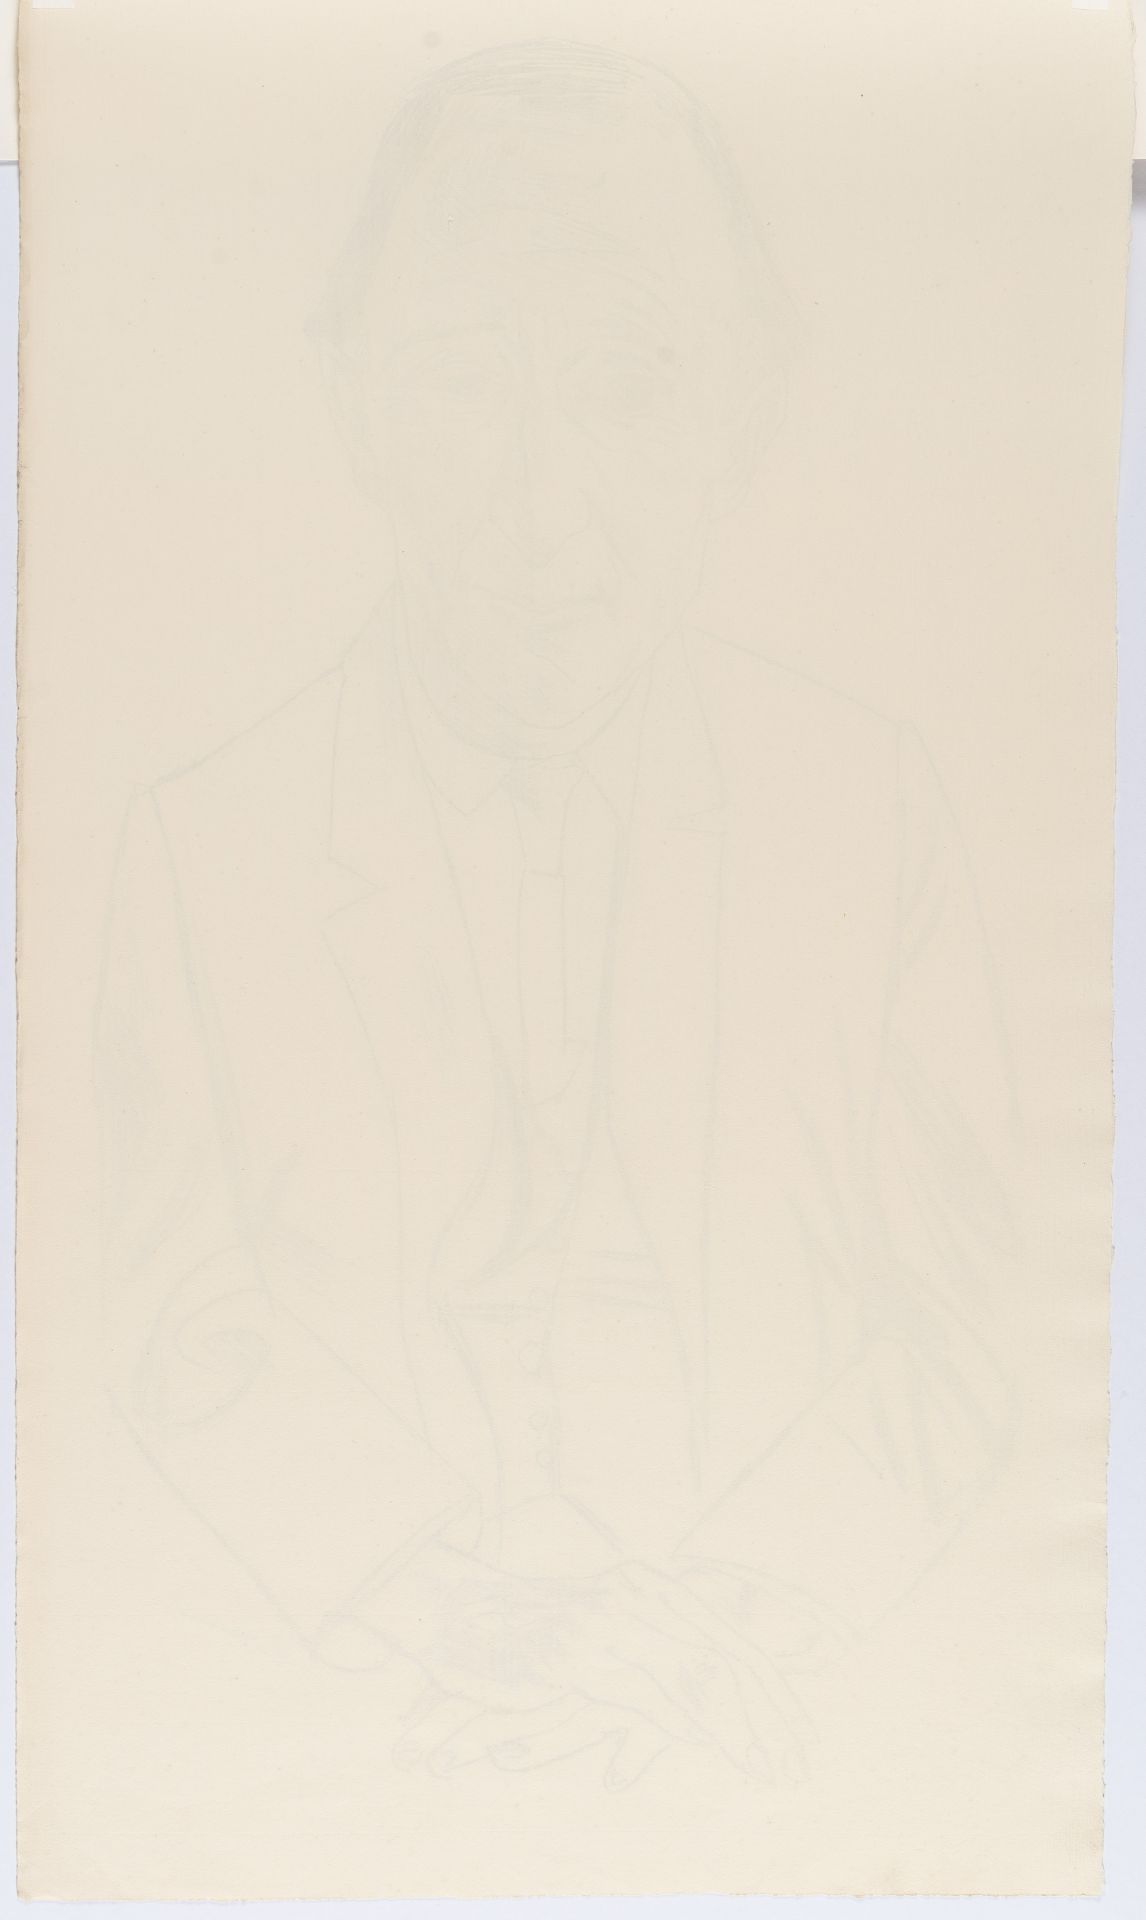 Max Beckmann – Bildnis des Komponisten Frederik Delius - Image 3 of 3